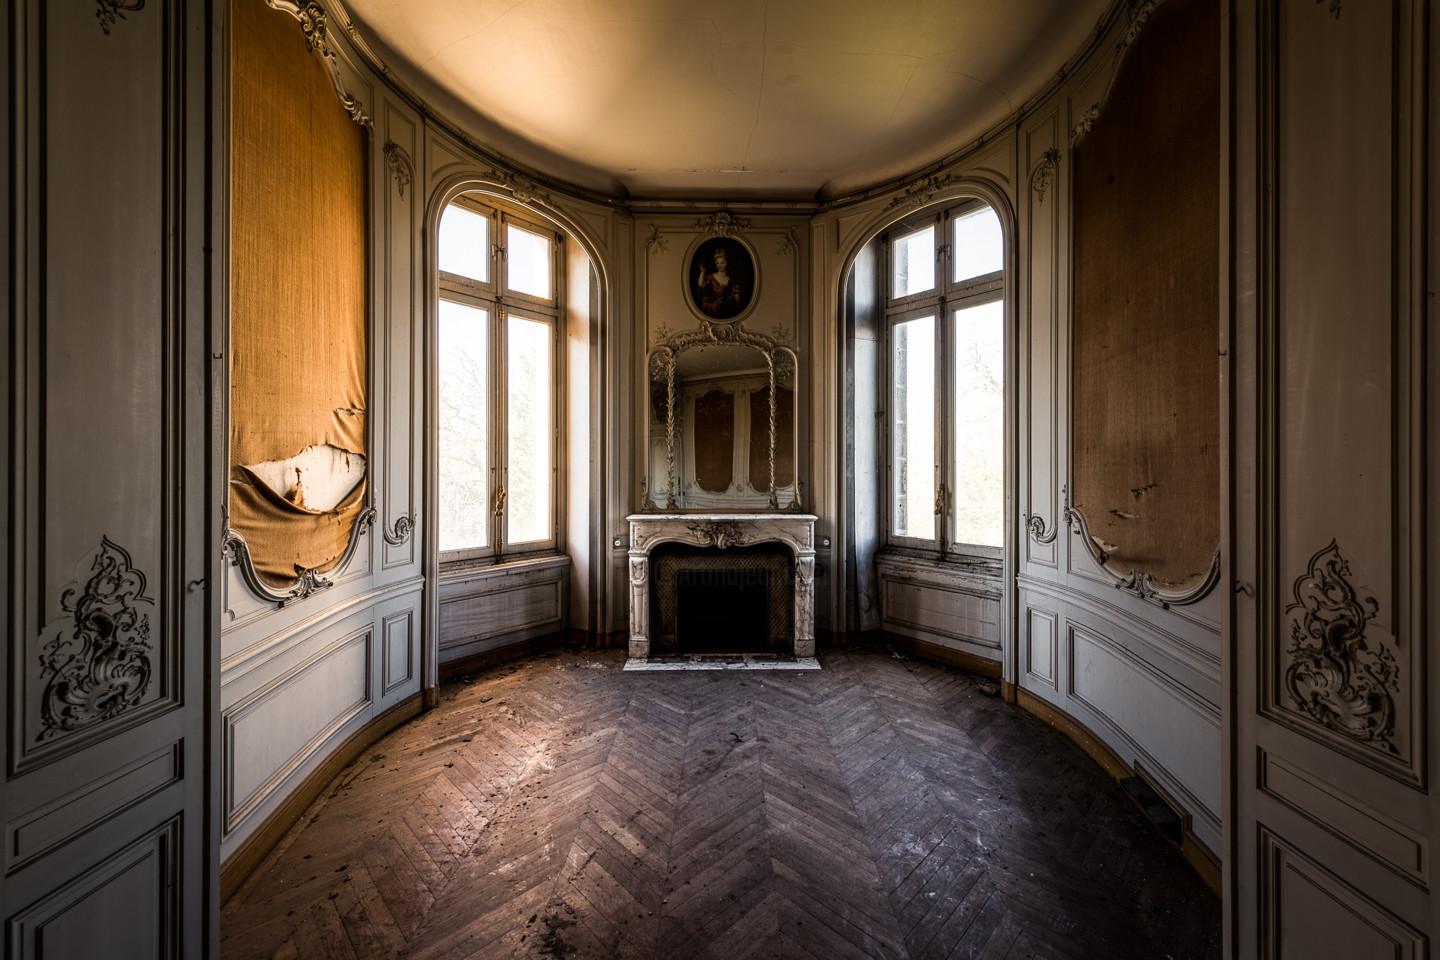 Chambre Dans Un Chateau Abandonne Photographie Par Fabien Sans Artmajeur